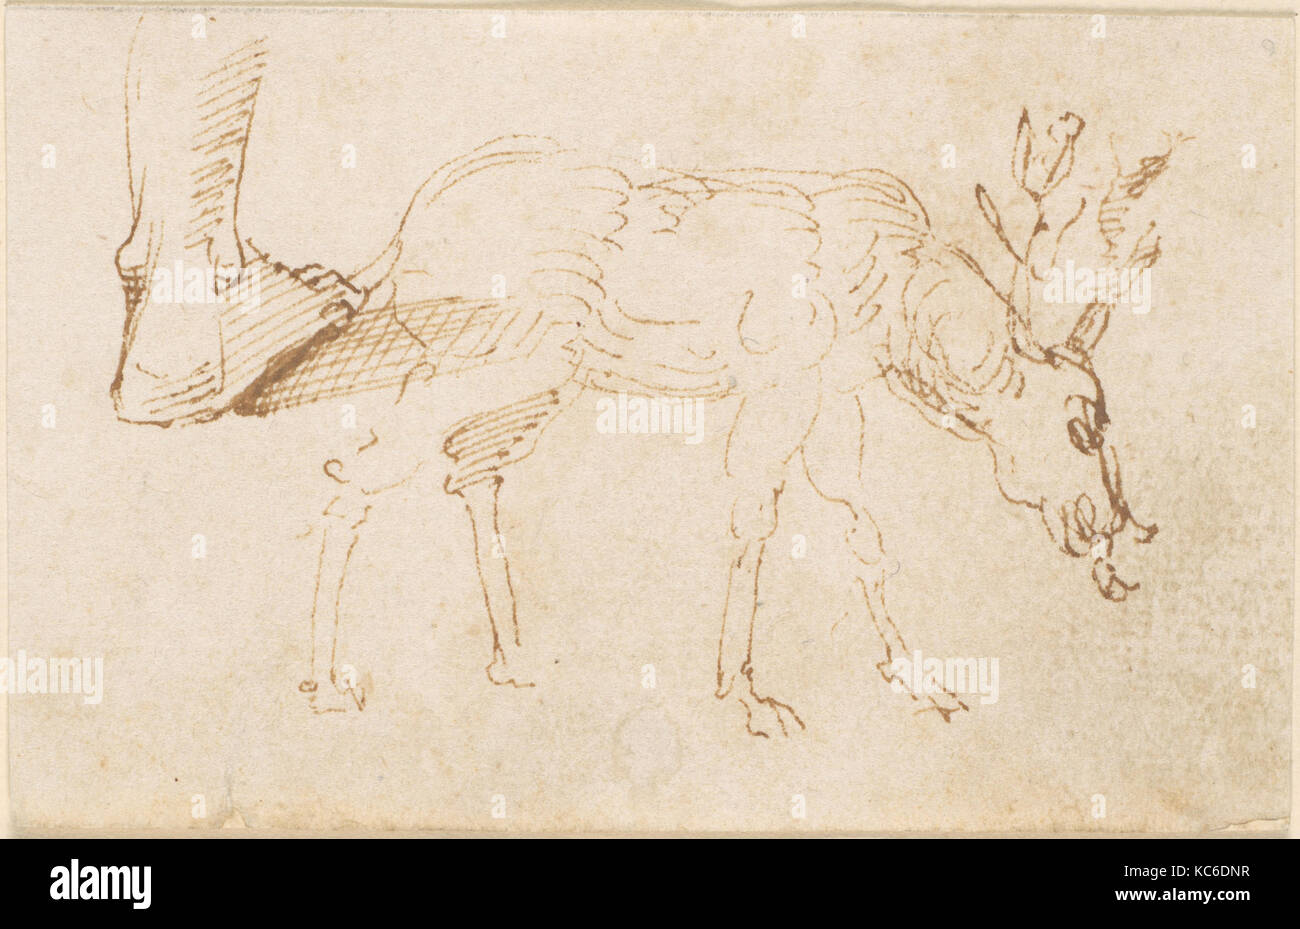 Des études sur un cerf, attribué à Stefano da Verona, n.d Banque D'Images